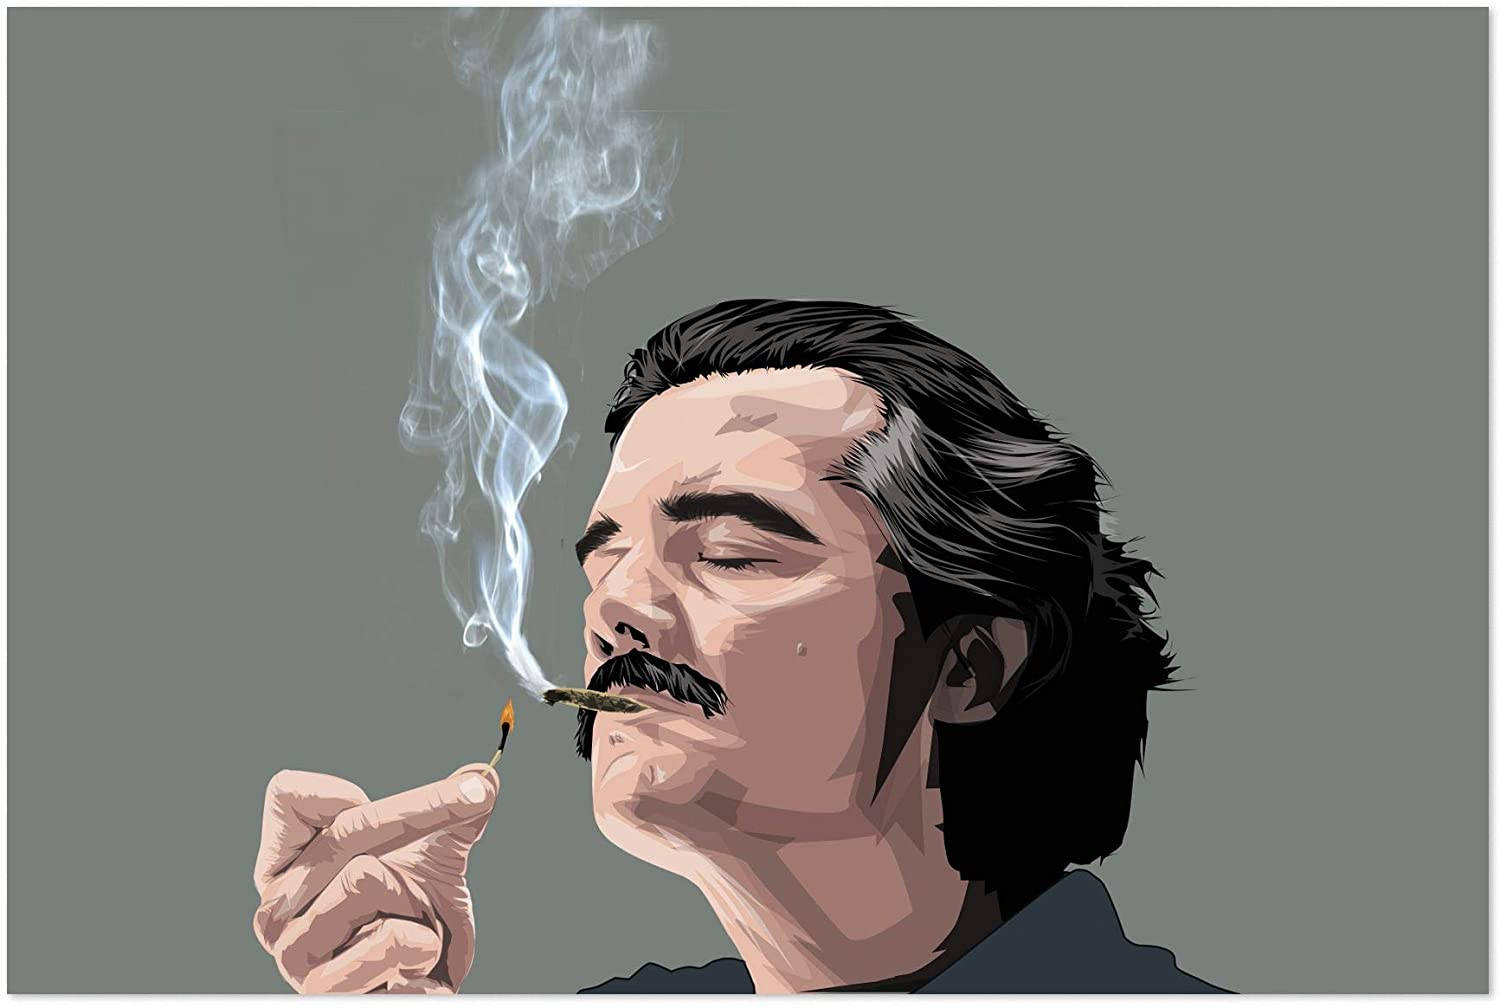 Pablo Escobar Smoking A Cigarette Background